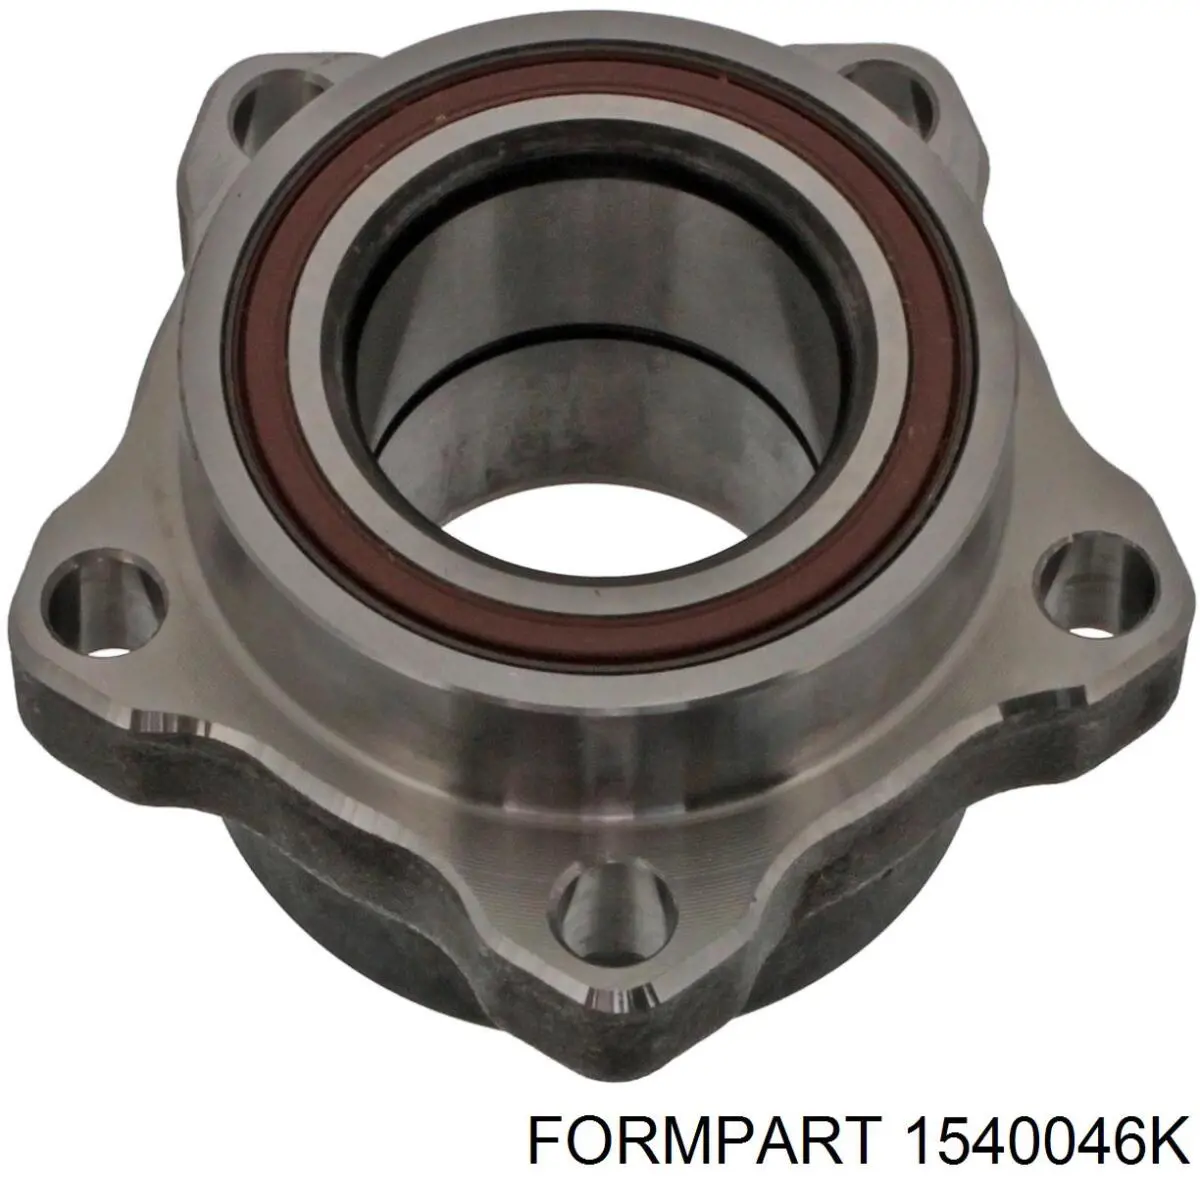 1540046K Formpart/Otoform rolamento de cubo dianteiro